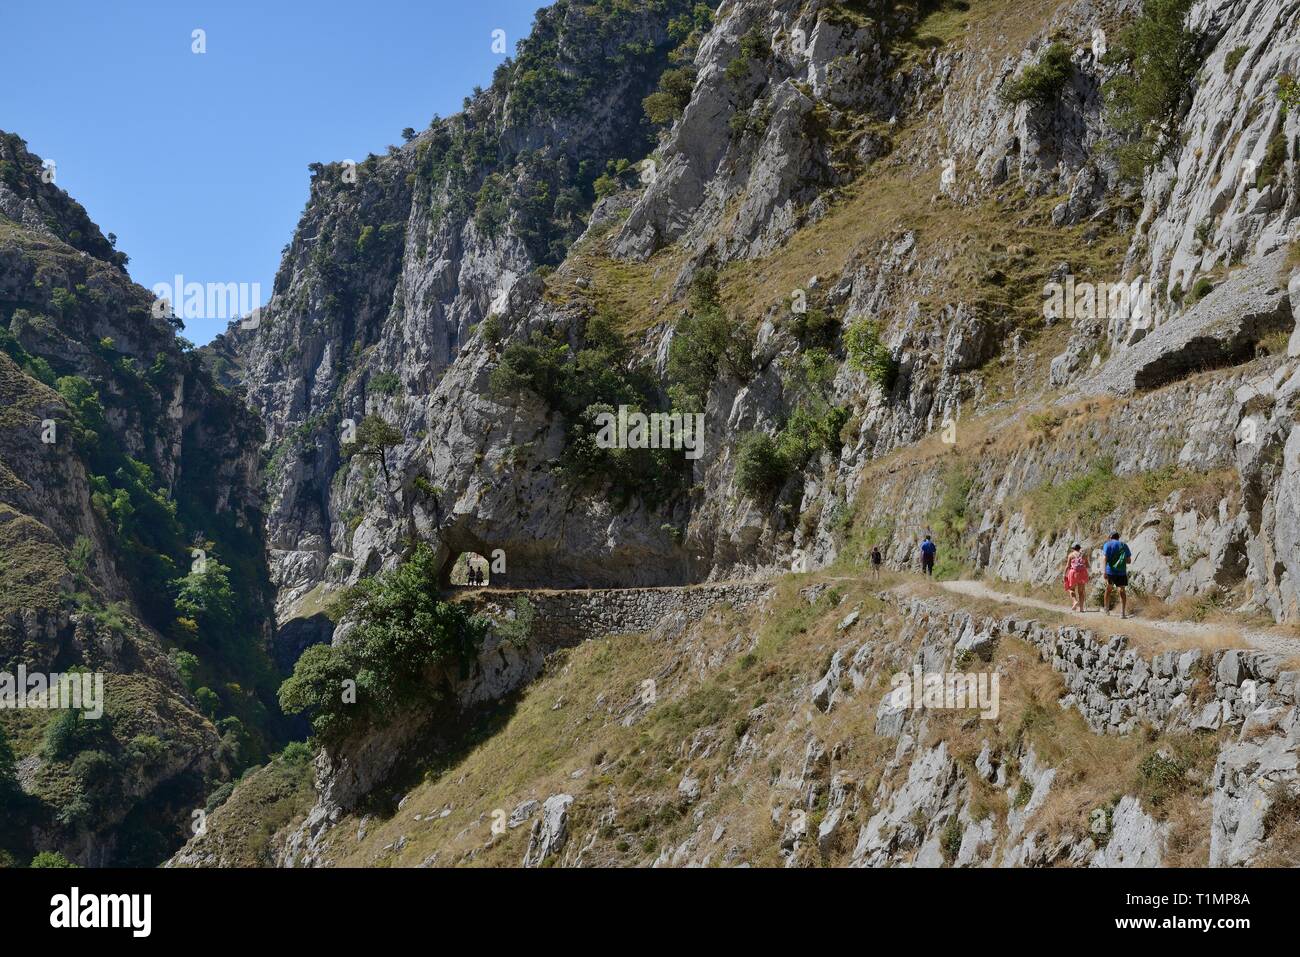 Les randonneurs sur les gorges de Cares trail, avec un peu de passer par un tunnel de roche excavée, Picos de Europa mountains, Asturias, Espagne, août 2016. Banque D'Images